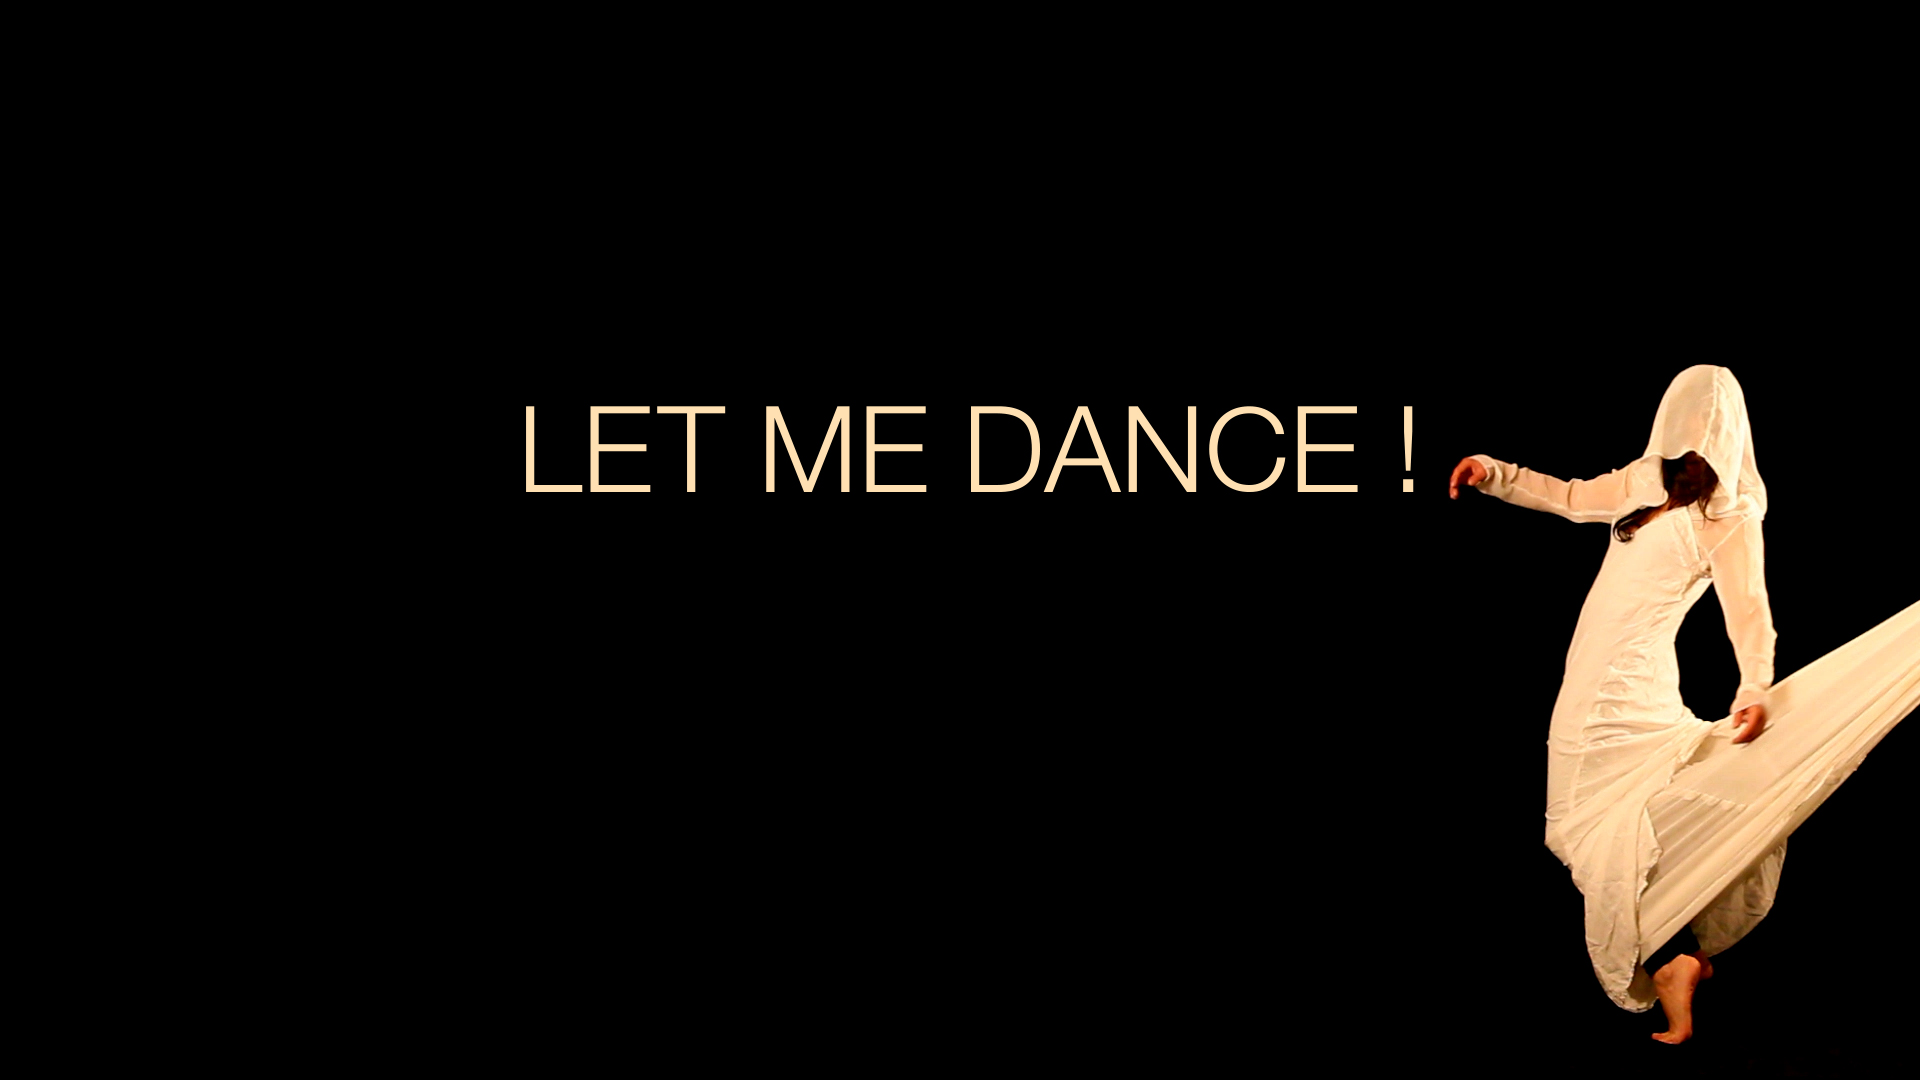 Let-me-dance01